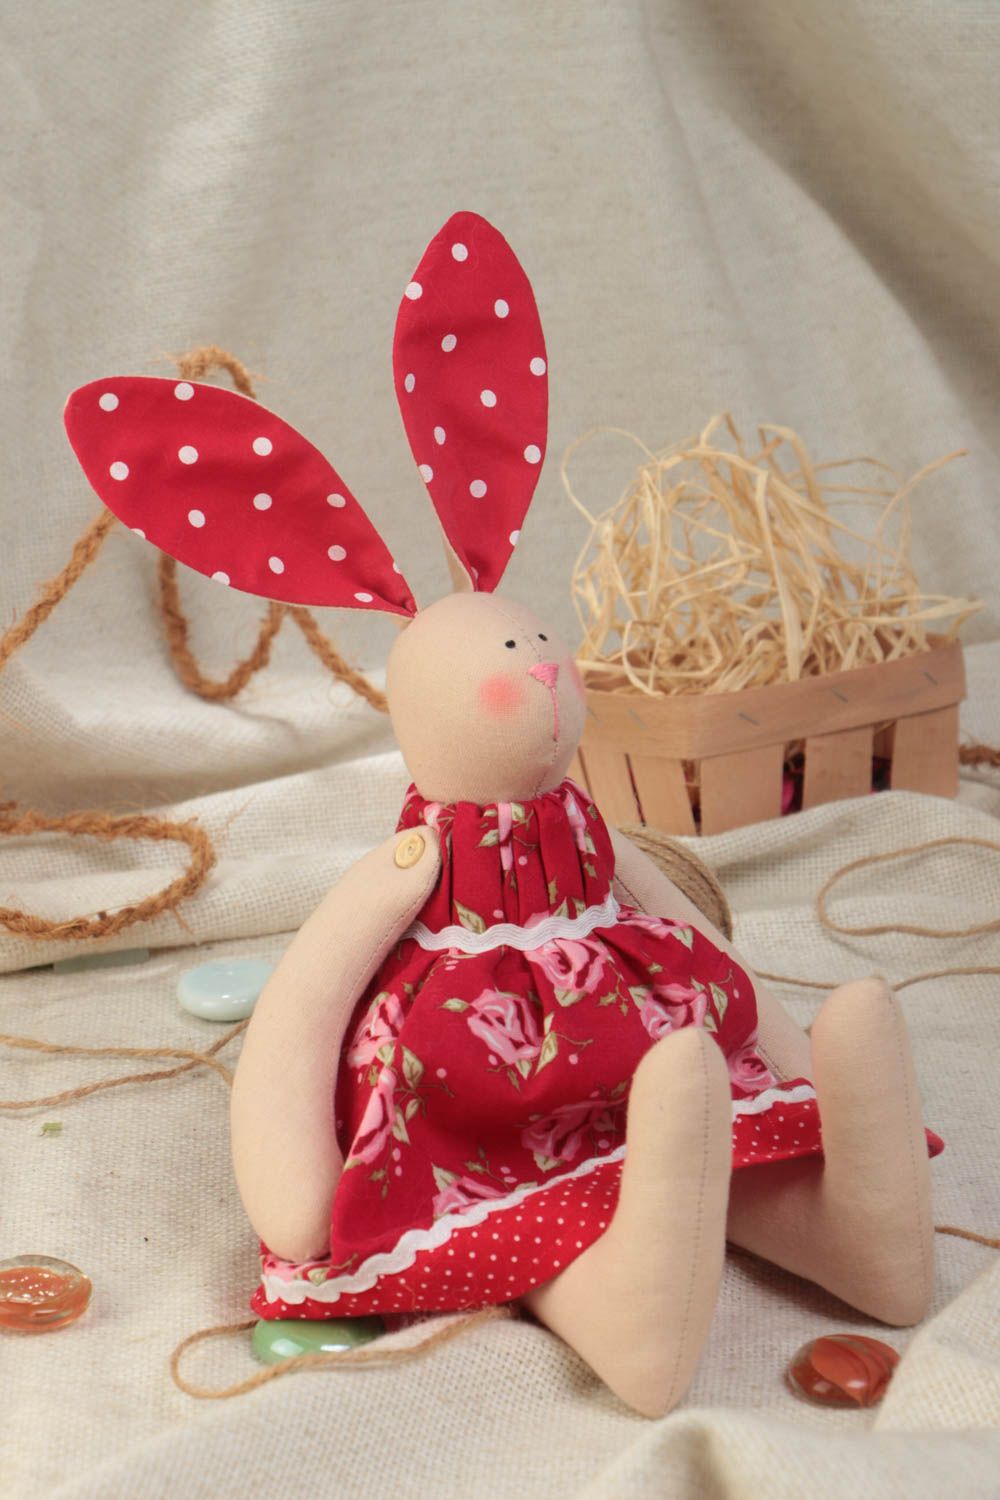 Тканевая игрушка в виде зайки в красном платье красивая небольшая ручной работы фото 1